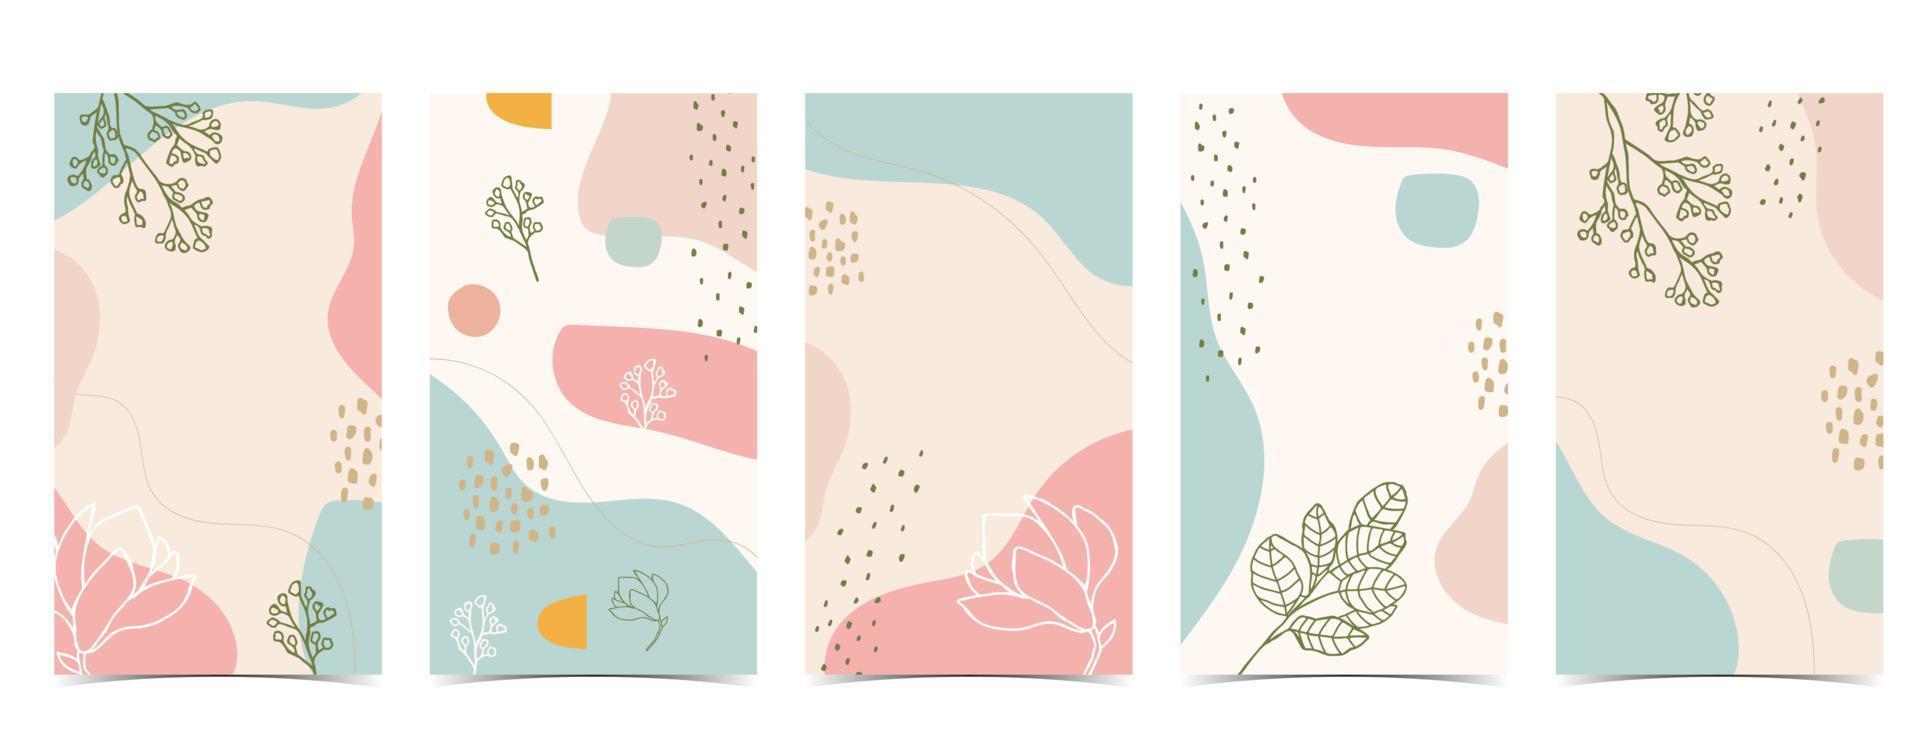 kleur ontwerp achtergrond voor sociale media met bloem, blad, vorm vector